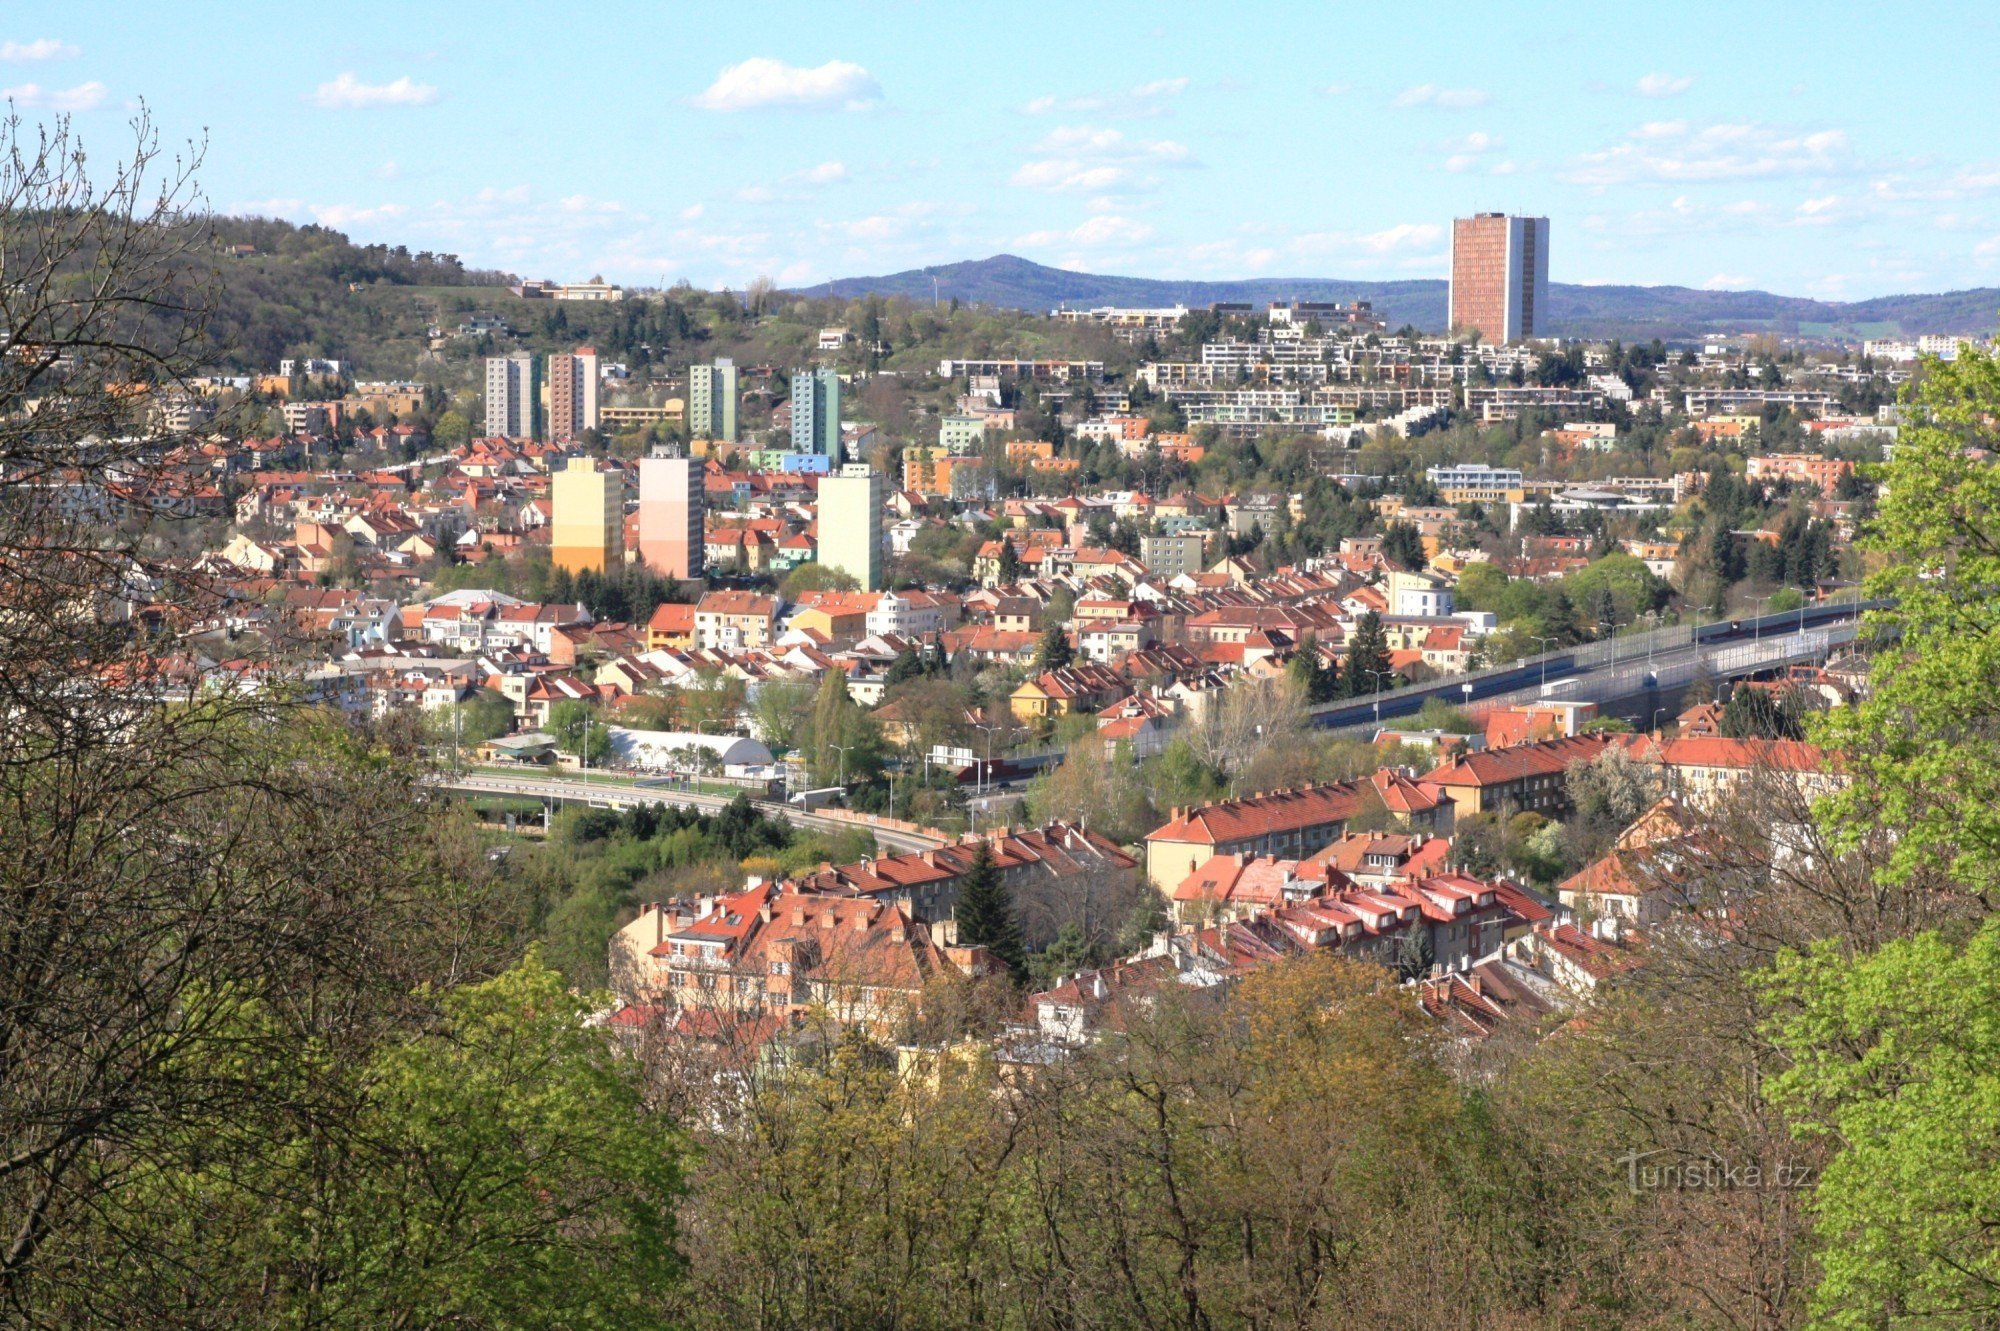 ジャボヴジェスキー地区とコミン地区の展望台からの眺め